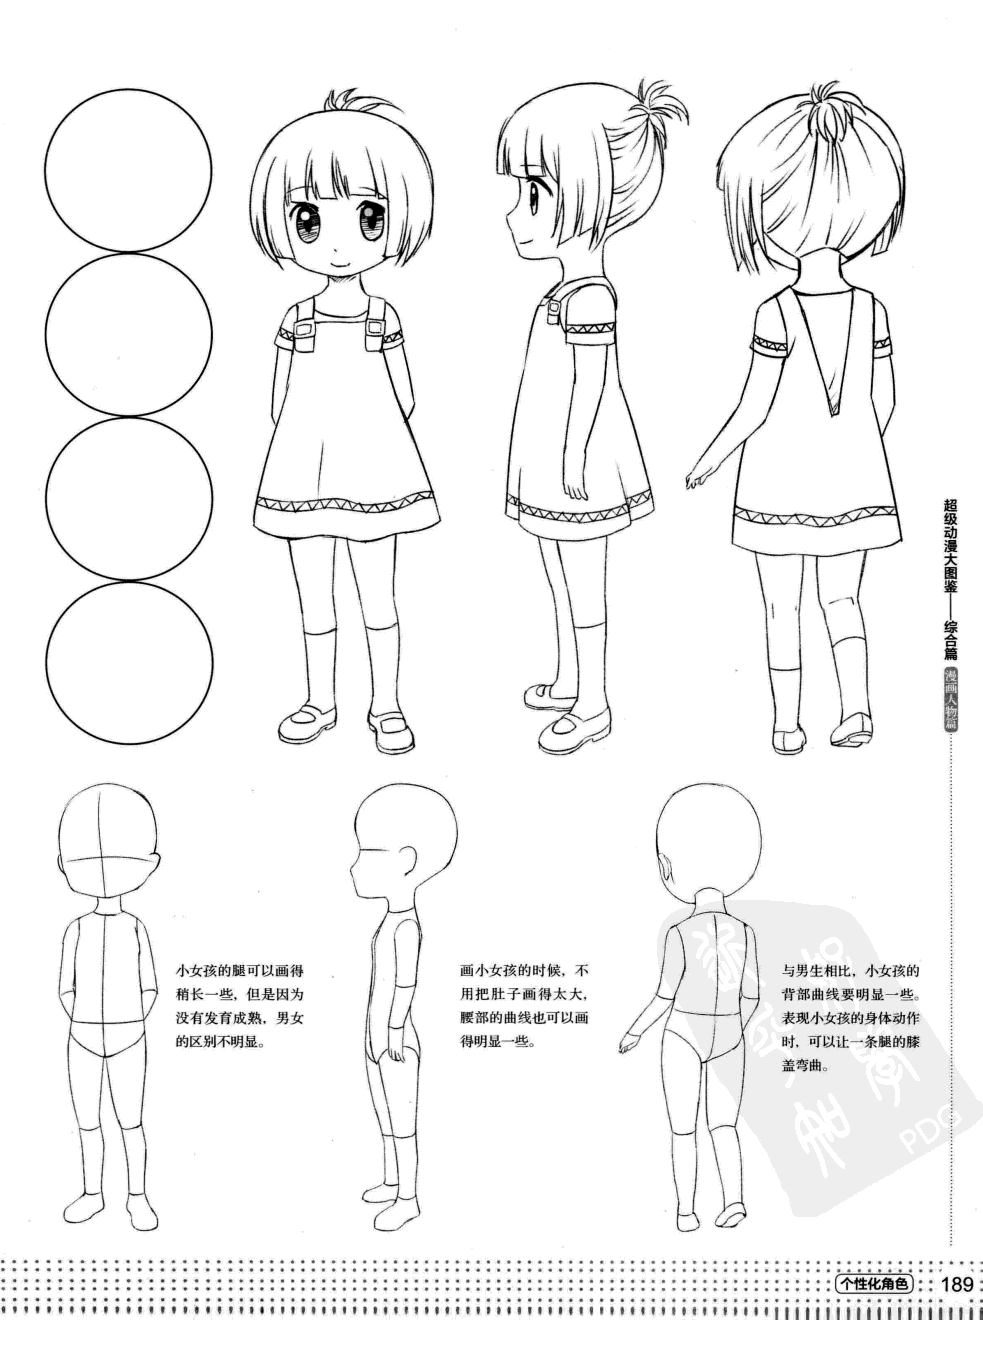 Референсы для рисования аниме ребенка